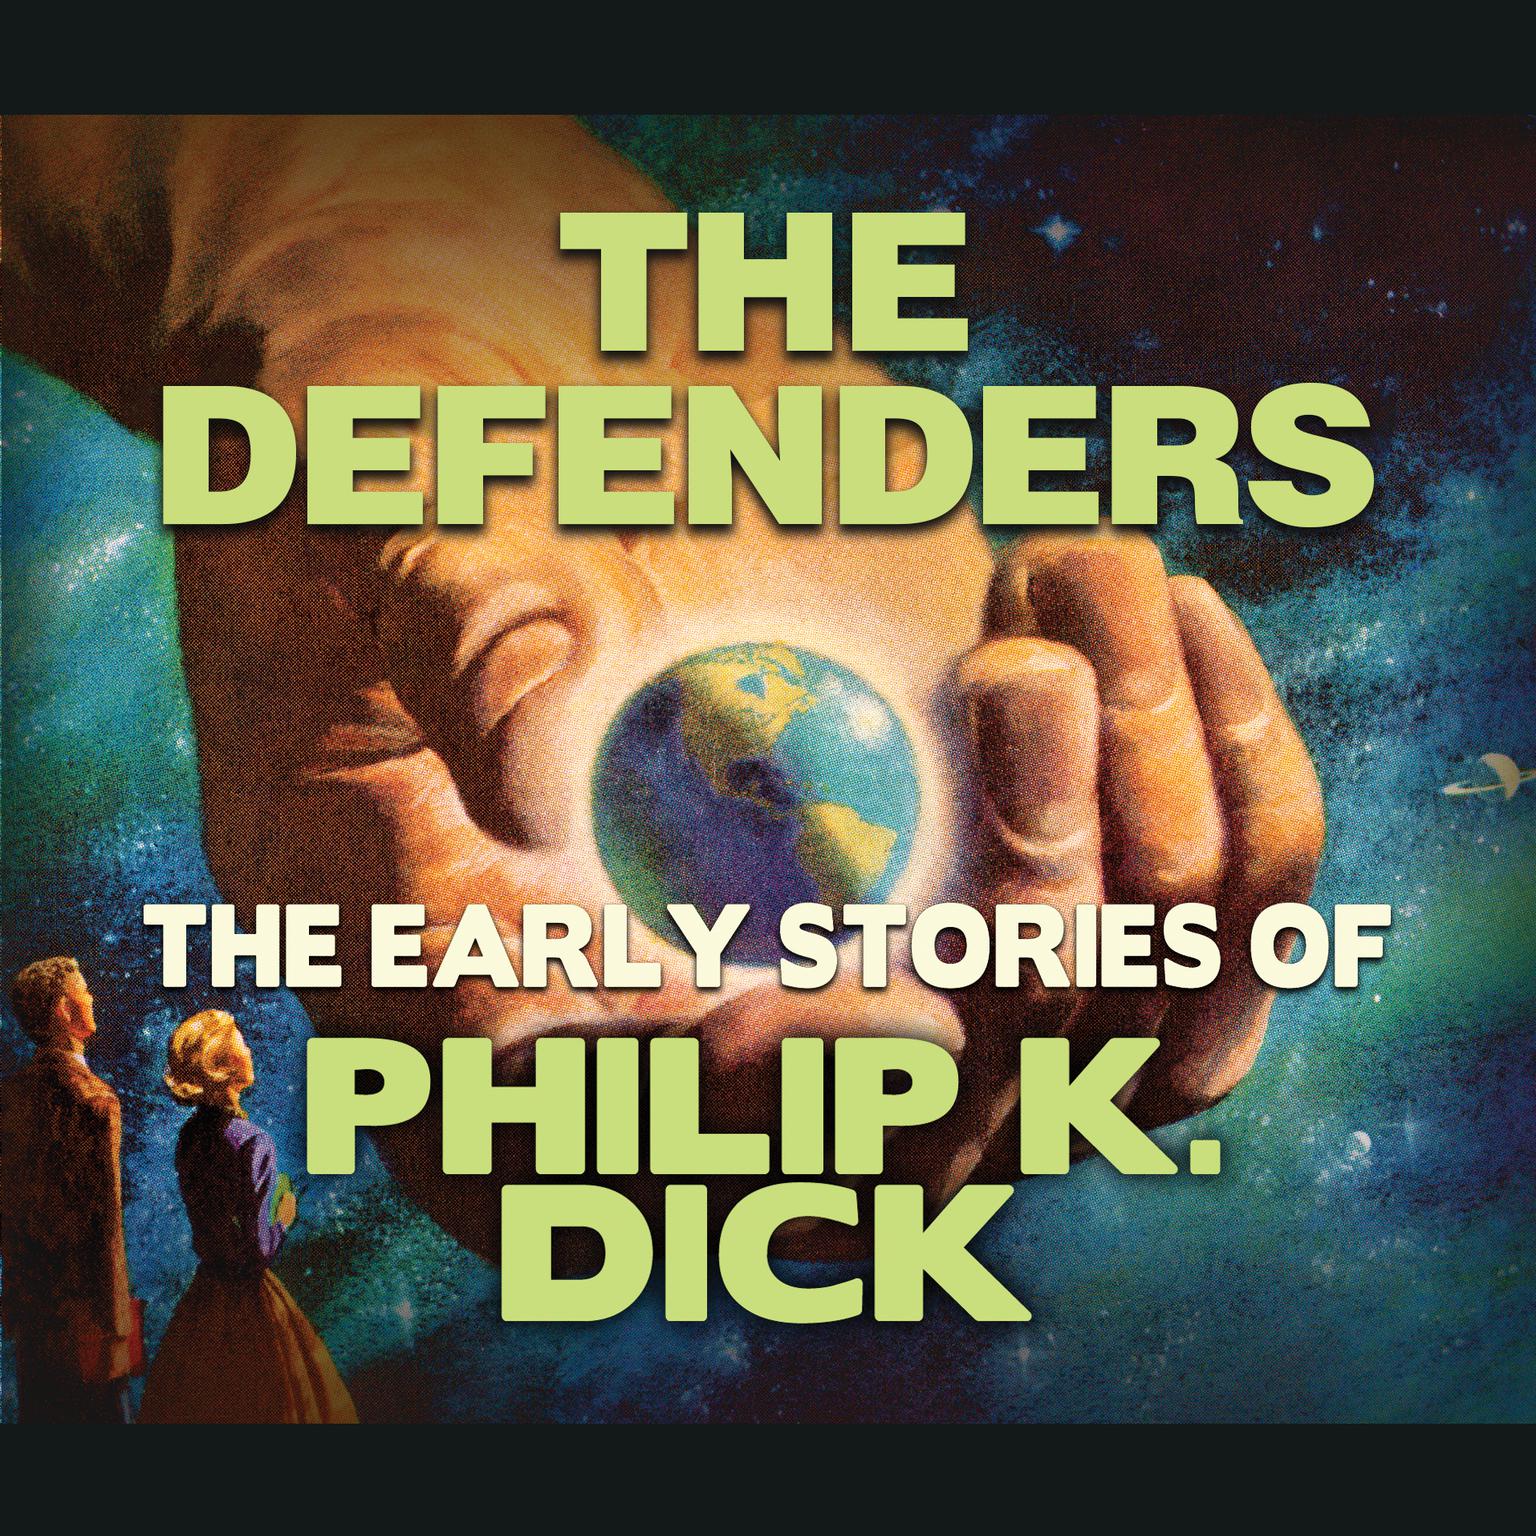 The Defenders Audiobook, by Philip K. Dick